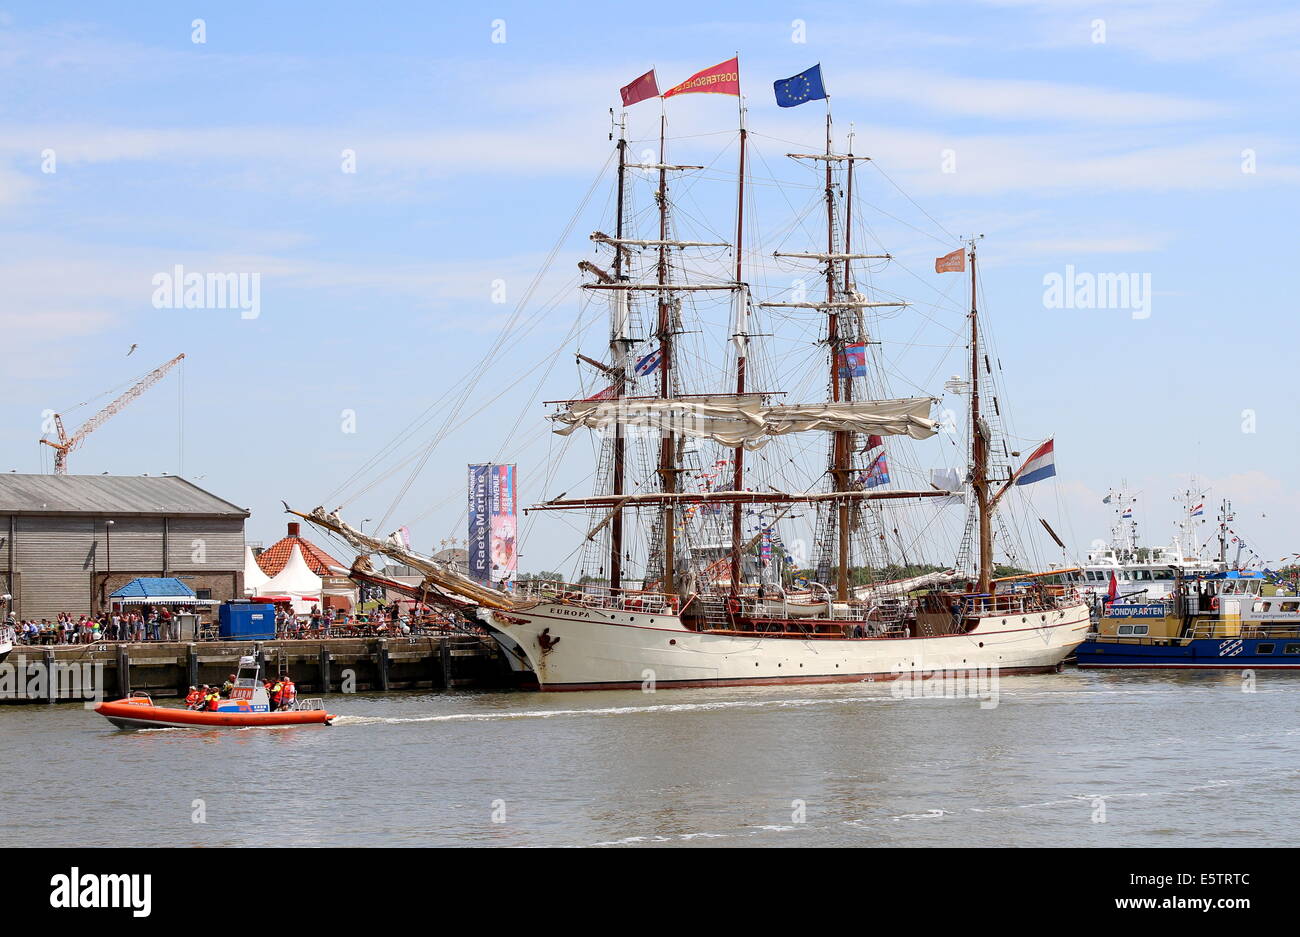 Dutch barque à coque d'acier et à l'Europa grand voilier Juillet 2014 Tall Ship Races dans Harlingen, Pays-Bas Banque D'Images